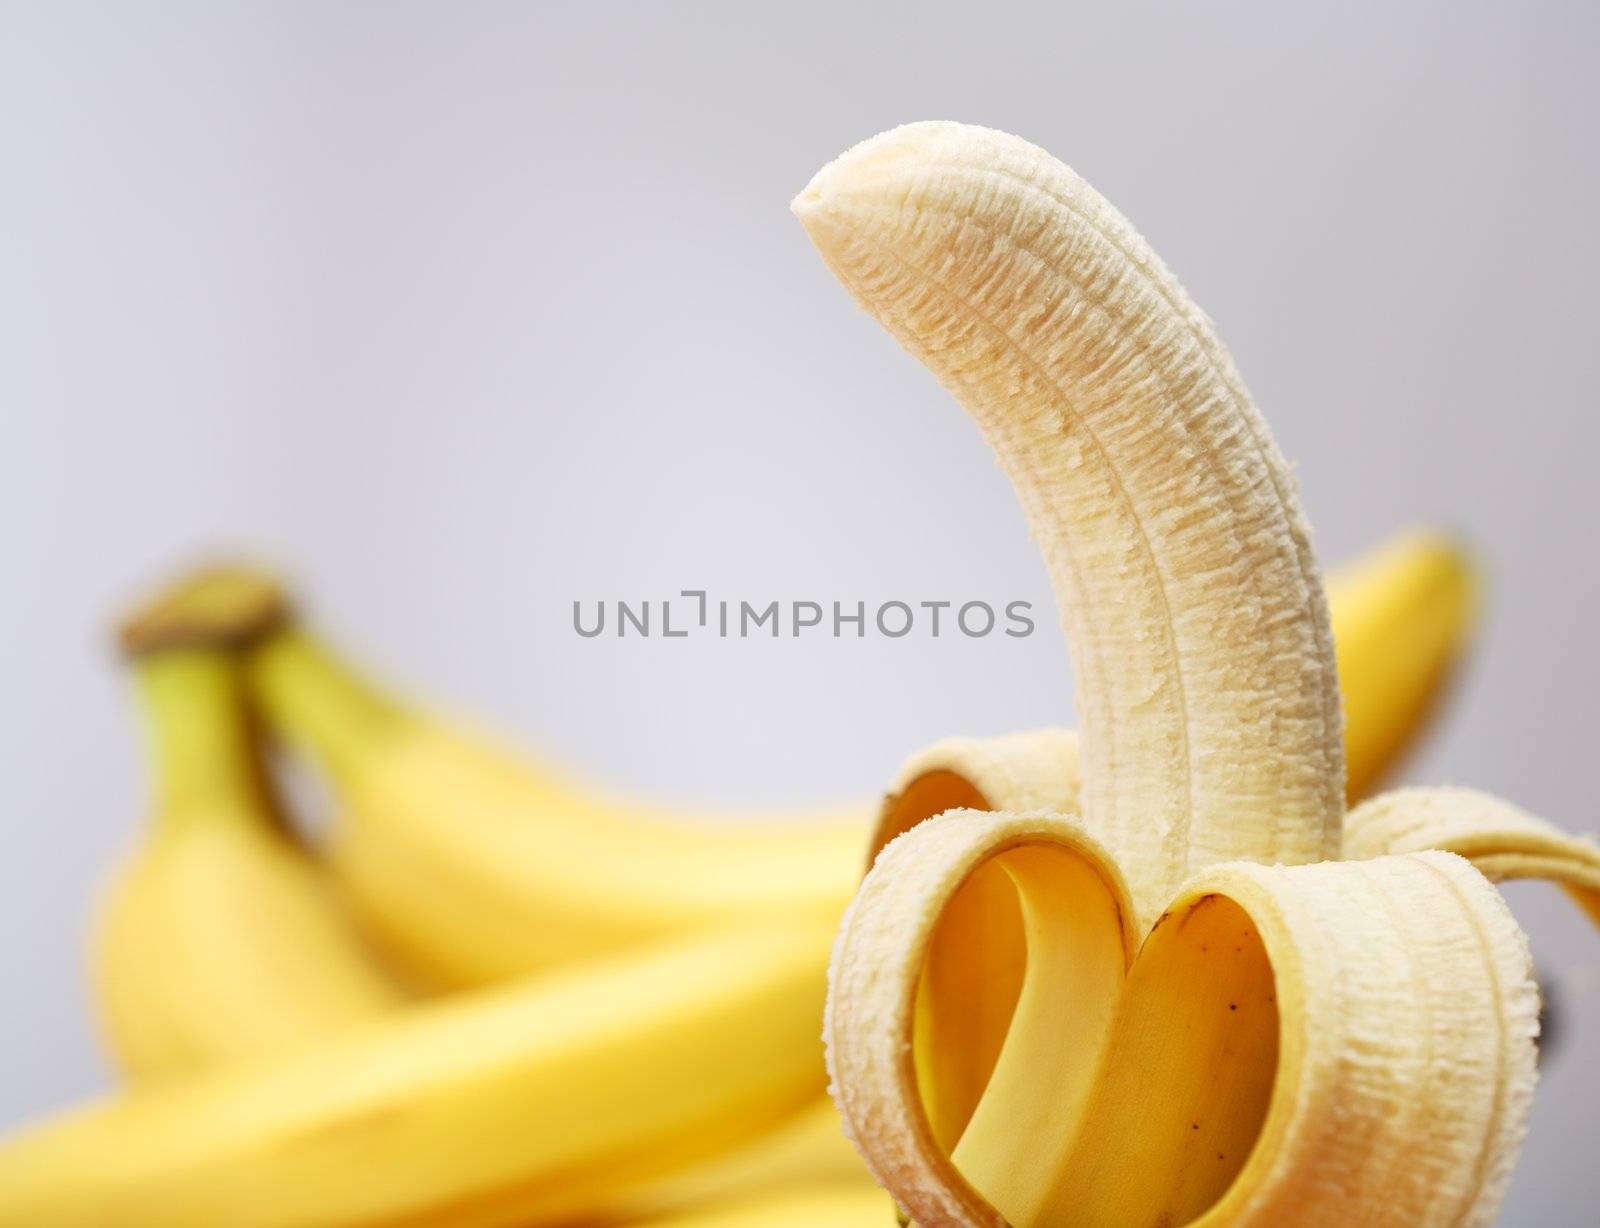 A banana, ready to be eaten.